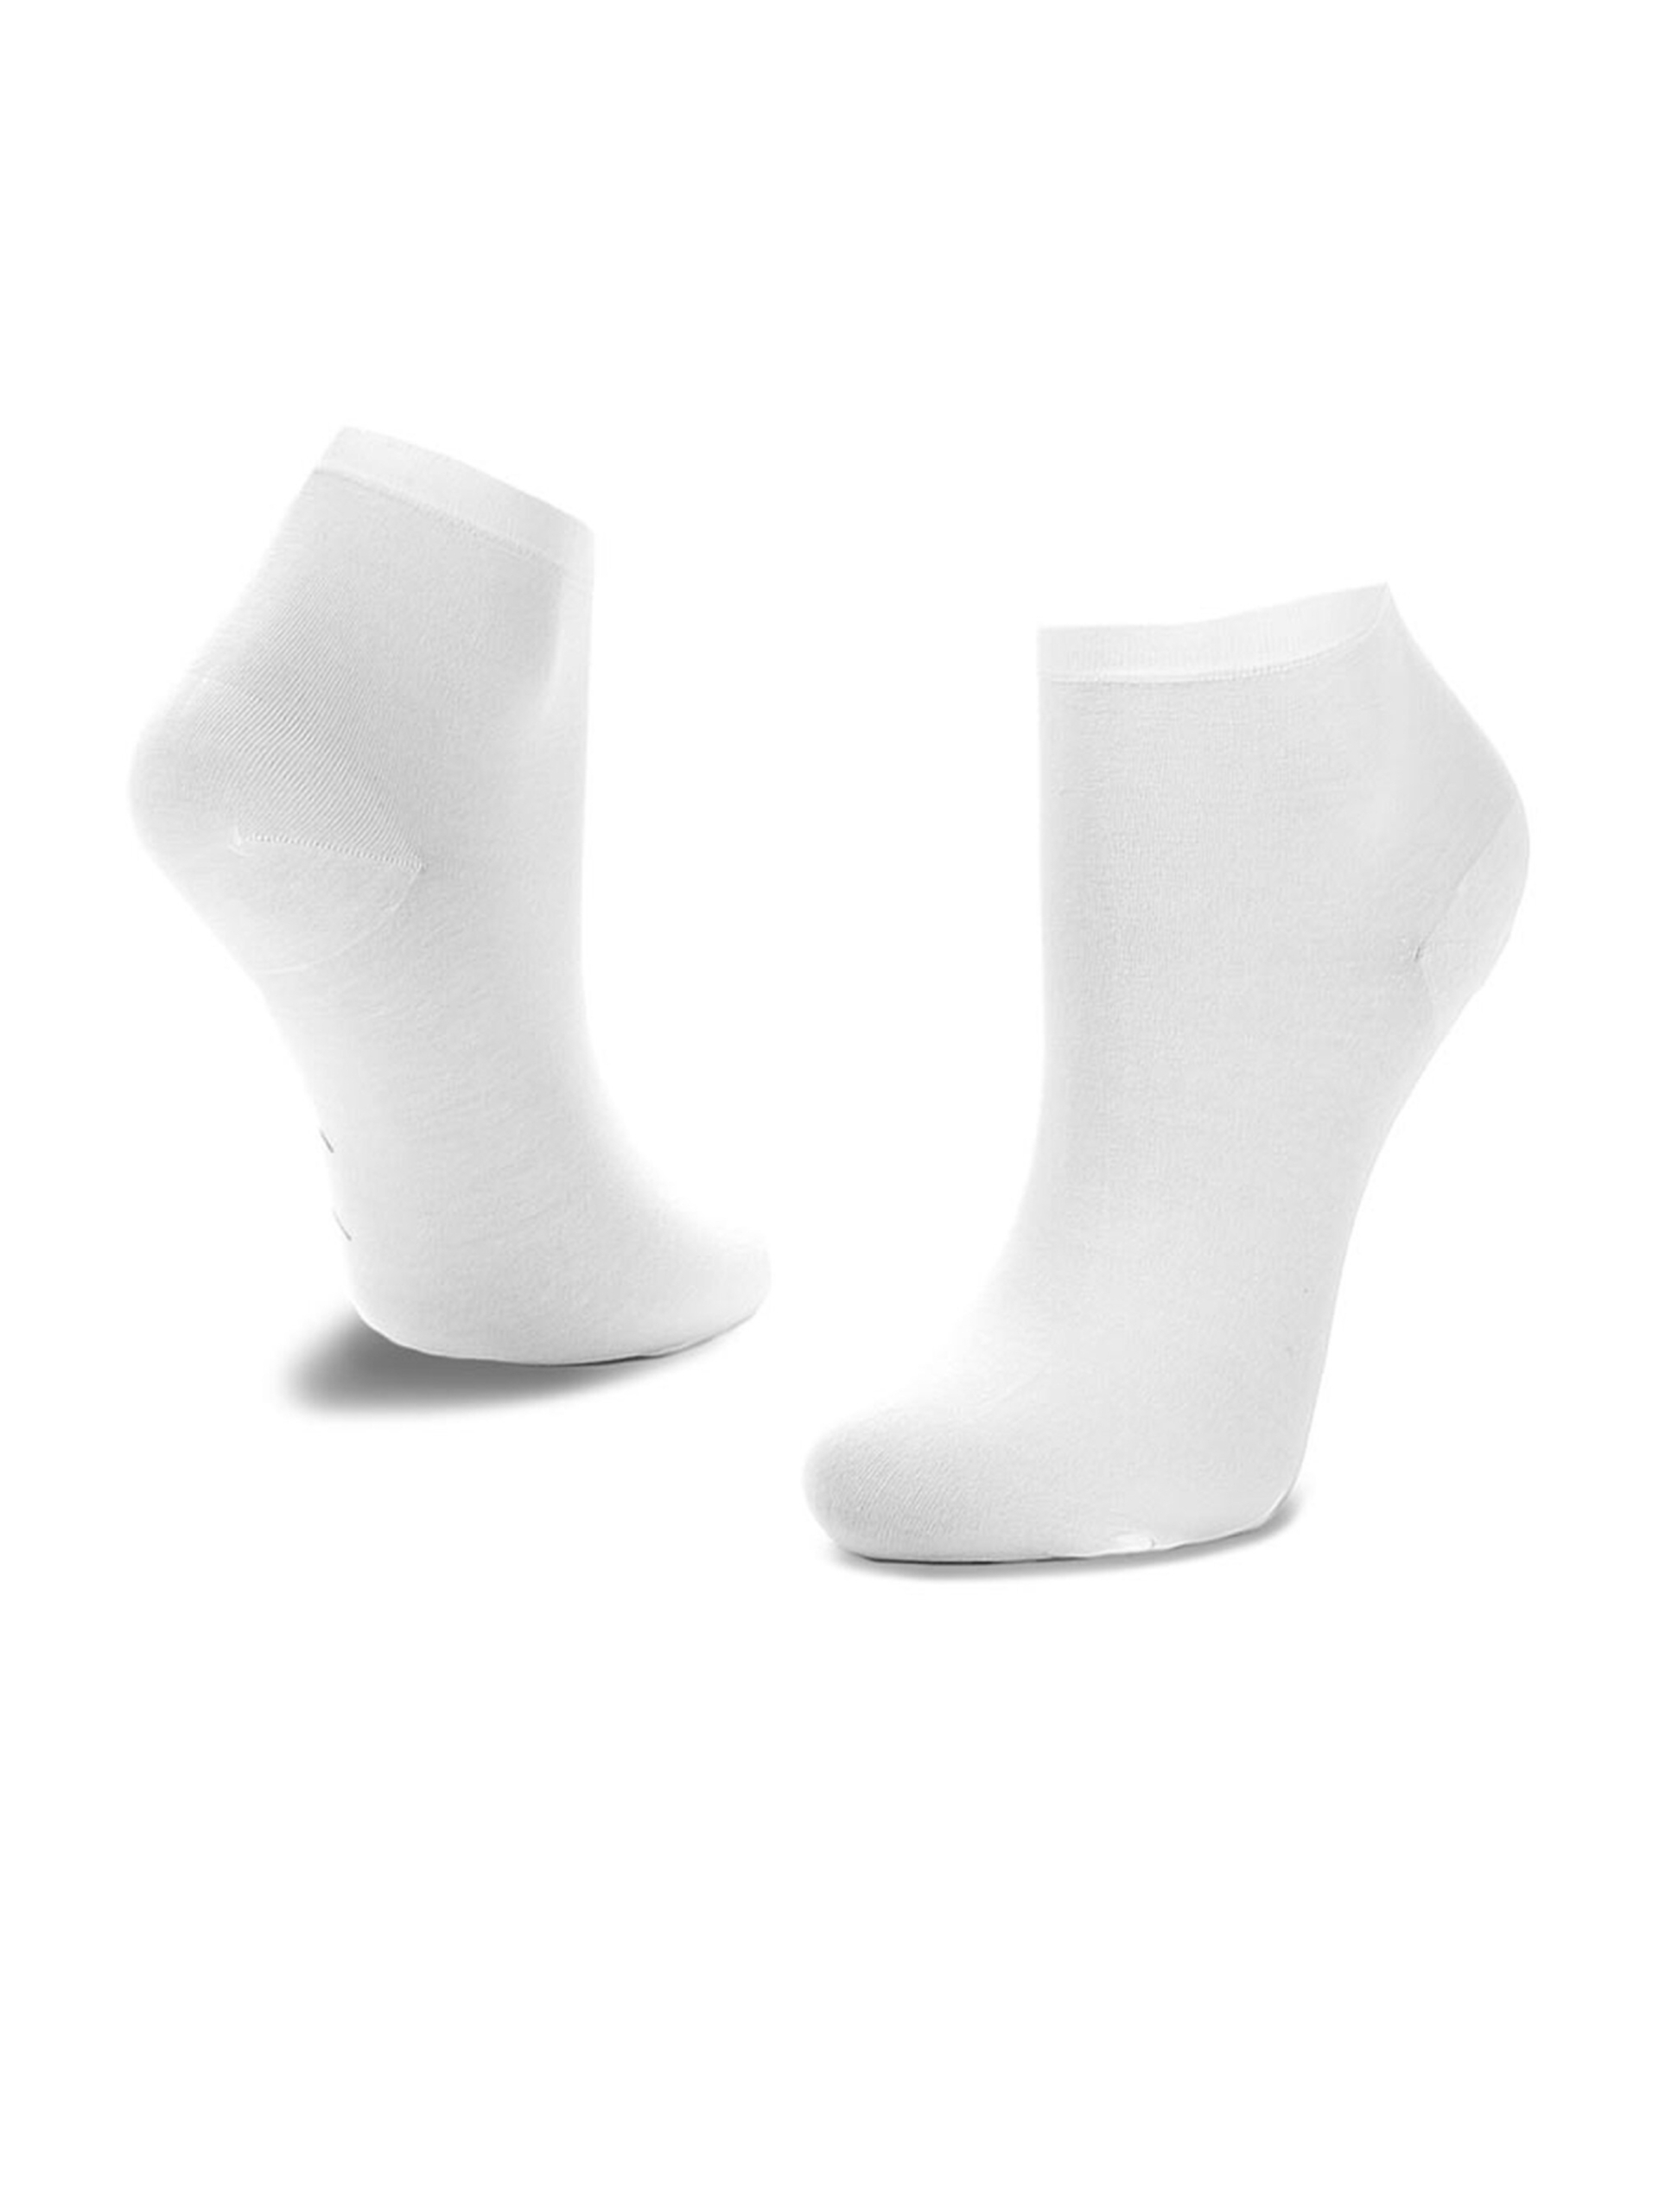 Tommy Hilfiger dámske biele ponožky 2 pack - 35 (WHITE)